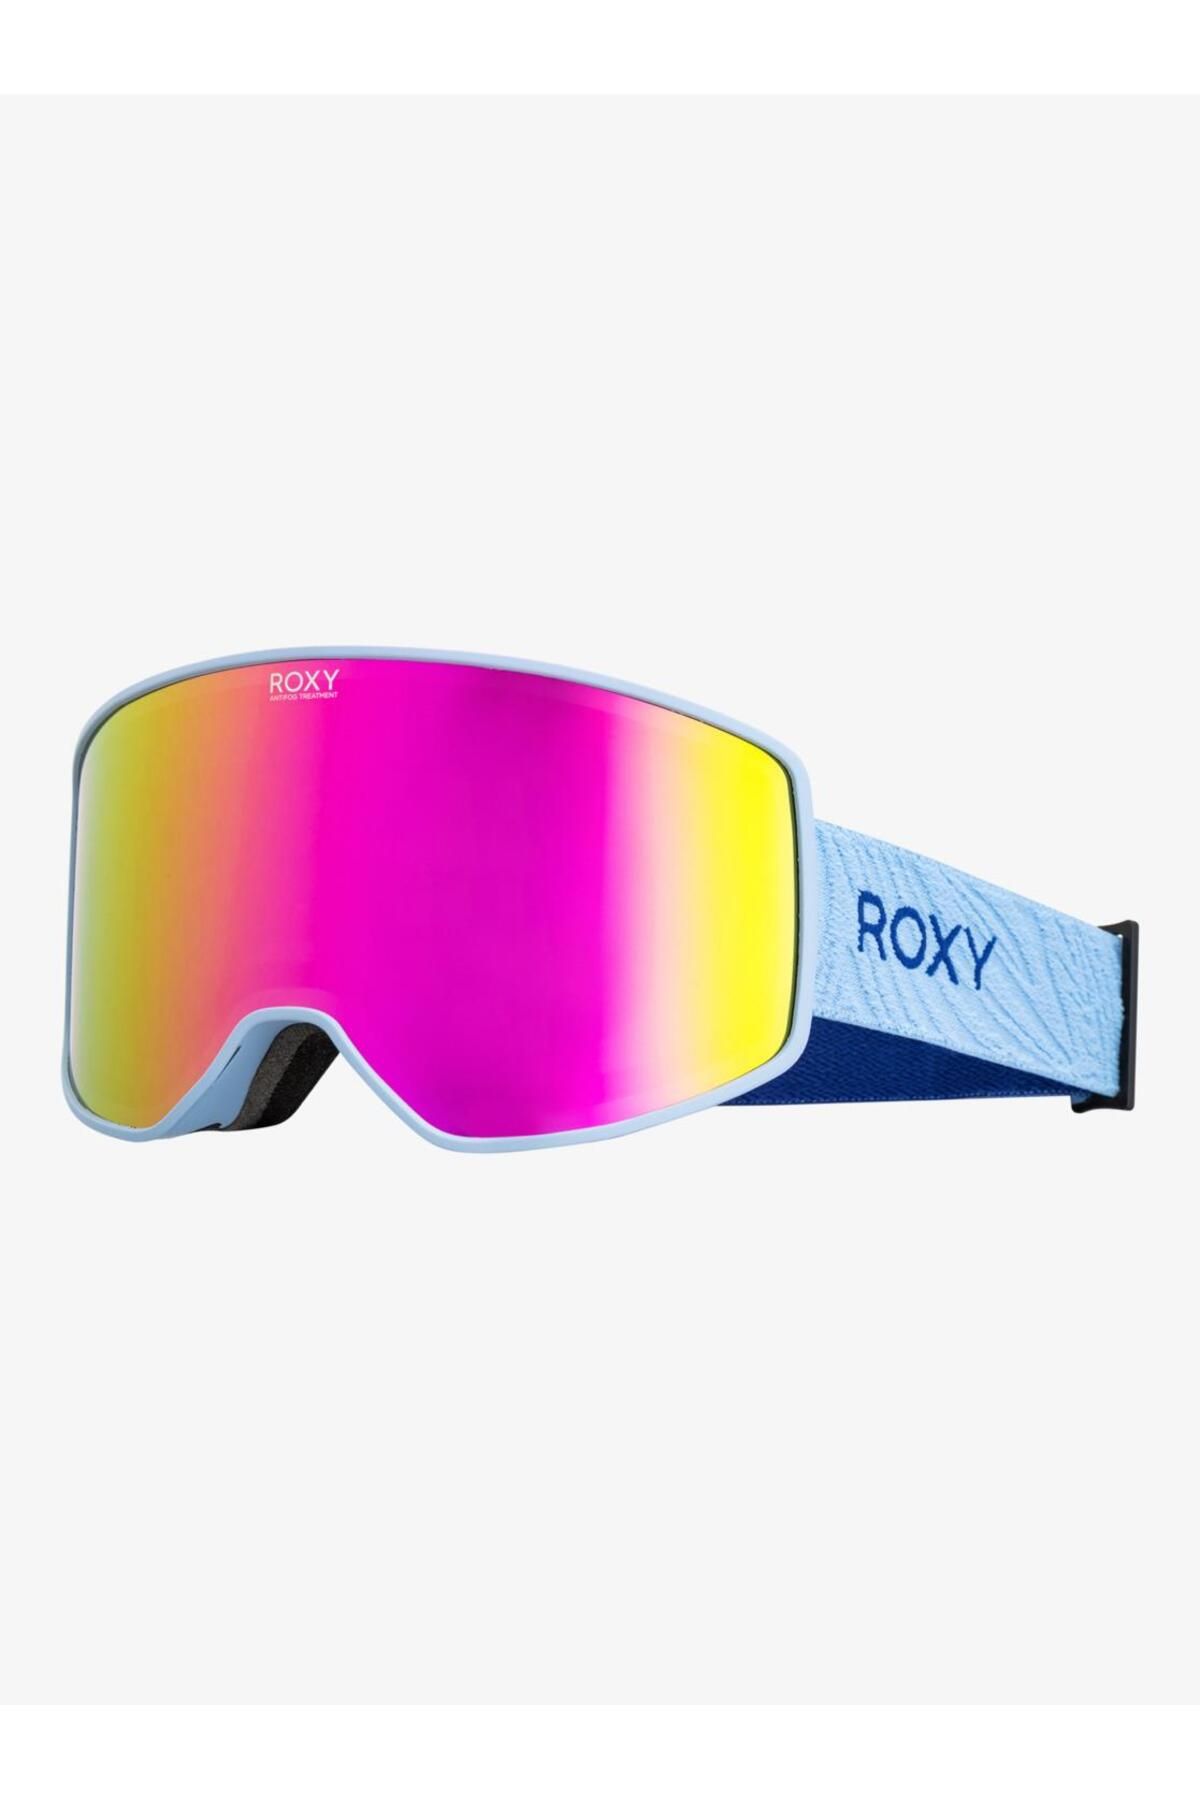 Roxy Storm Kadın Kayak/snowboard Gözlük-erjtg03166phn